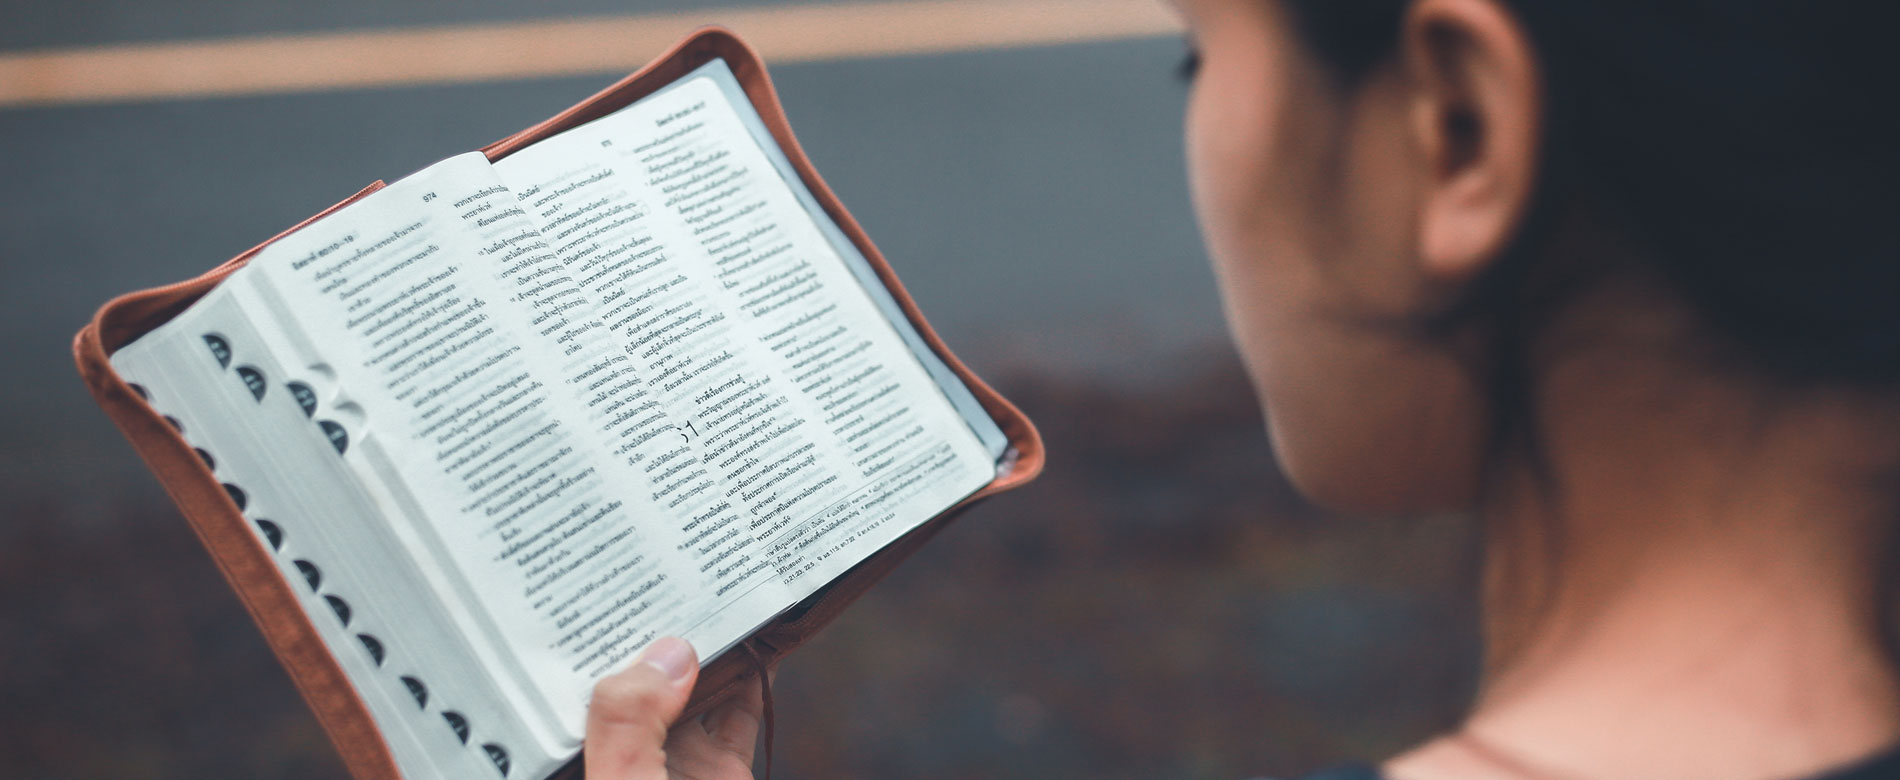 “Não tenho interesse em ler a Bíblia. O que posso fazer?”